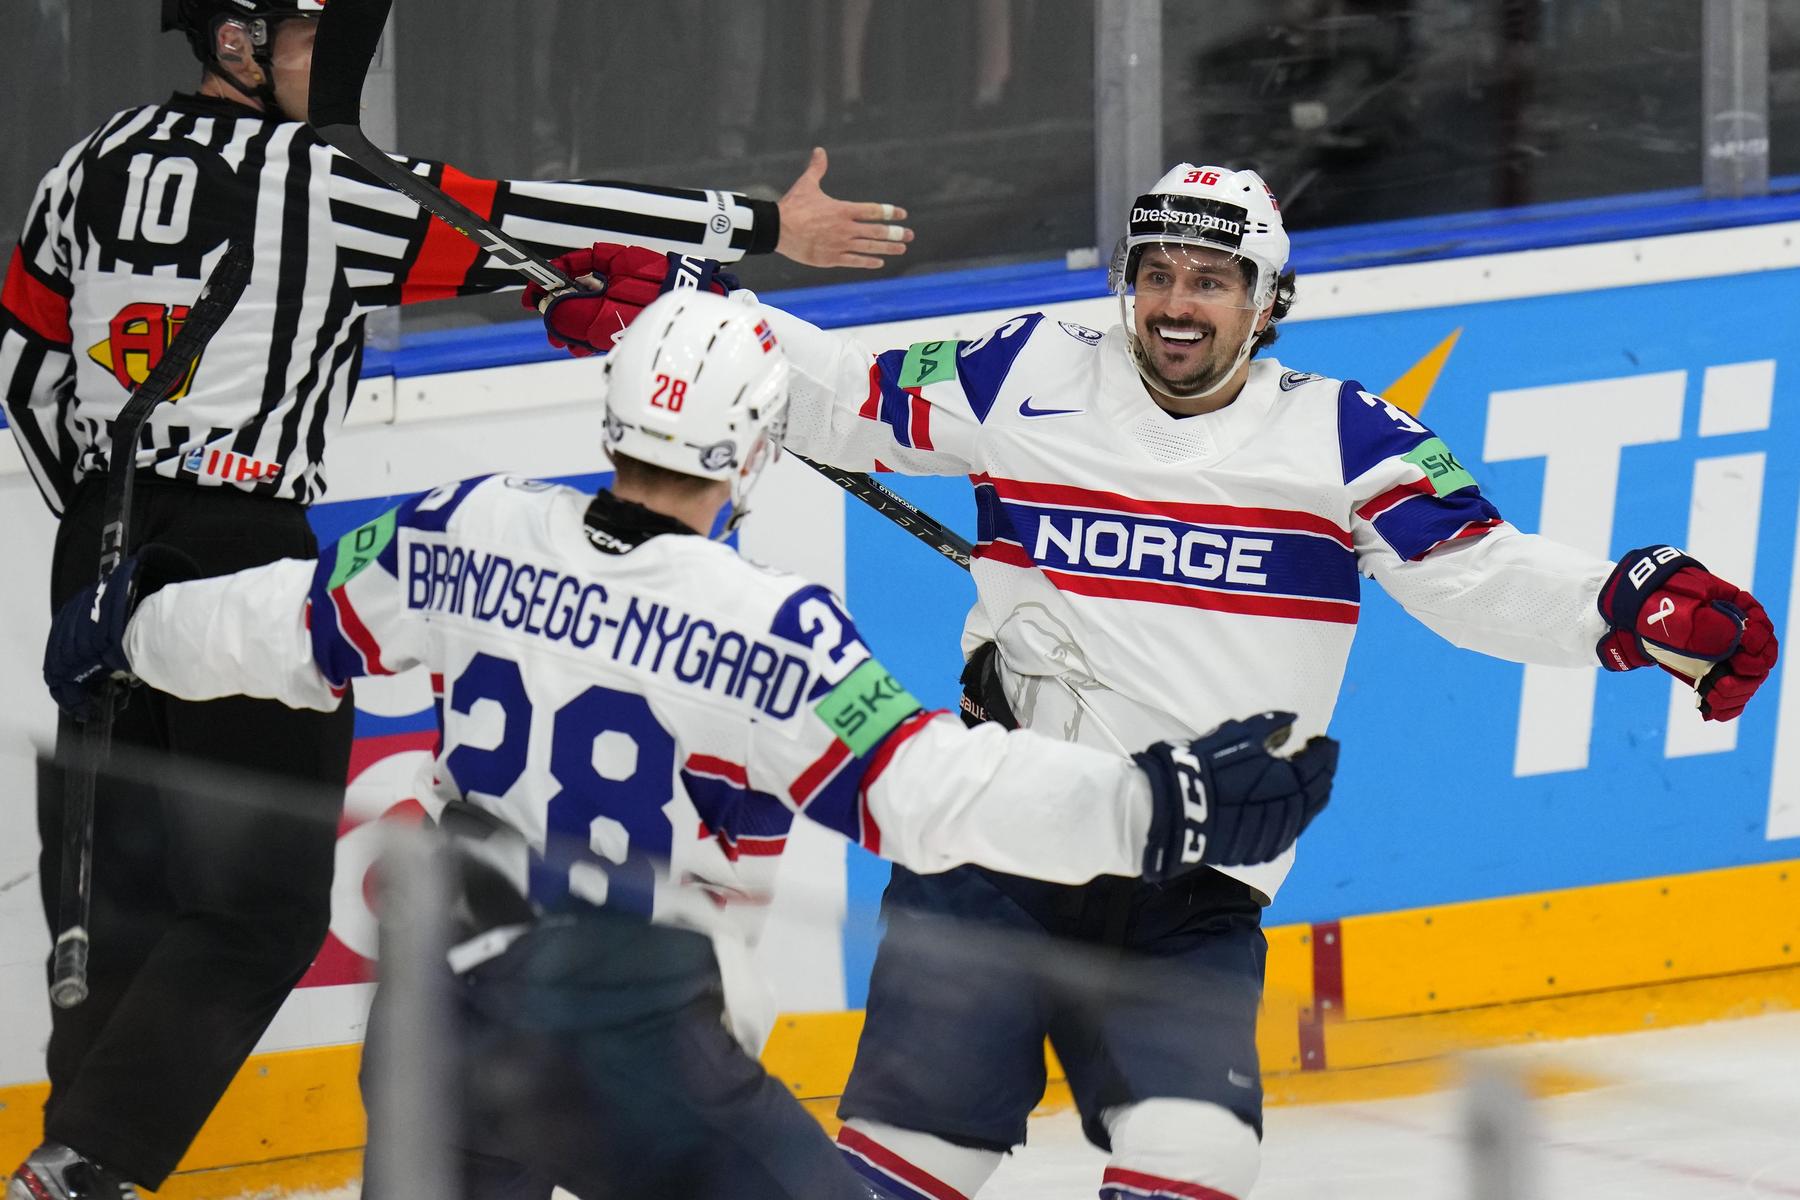 Eishockey-WM: Ein Edeltechniker führt die norwegische „Büffelherde“ an